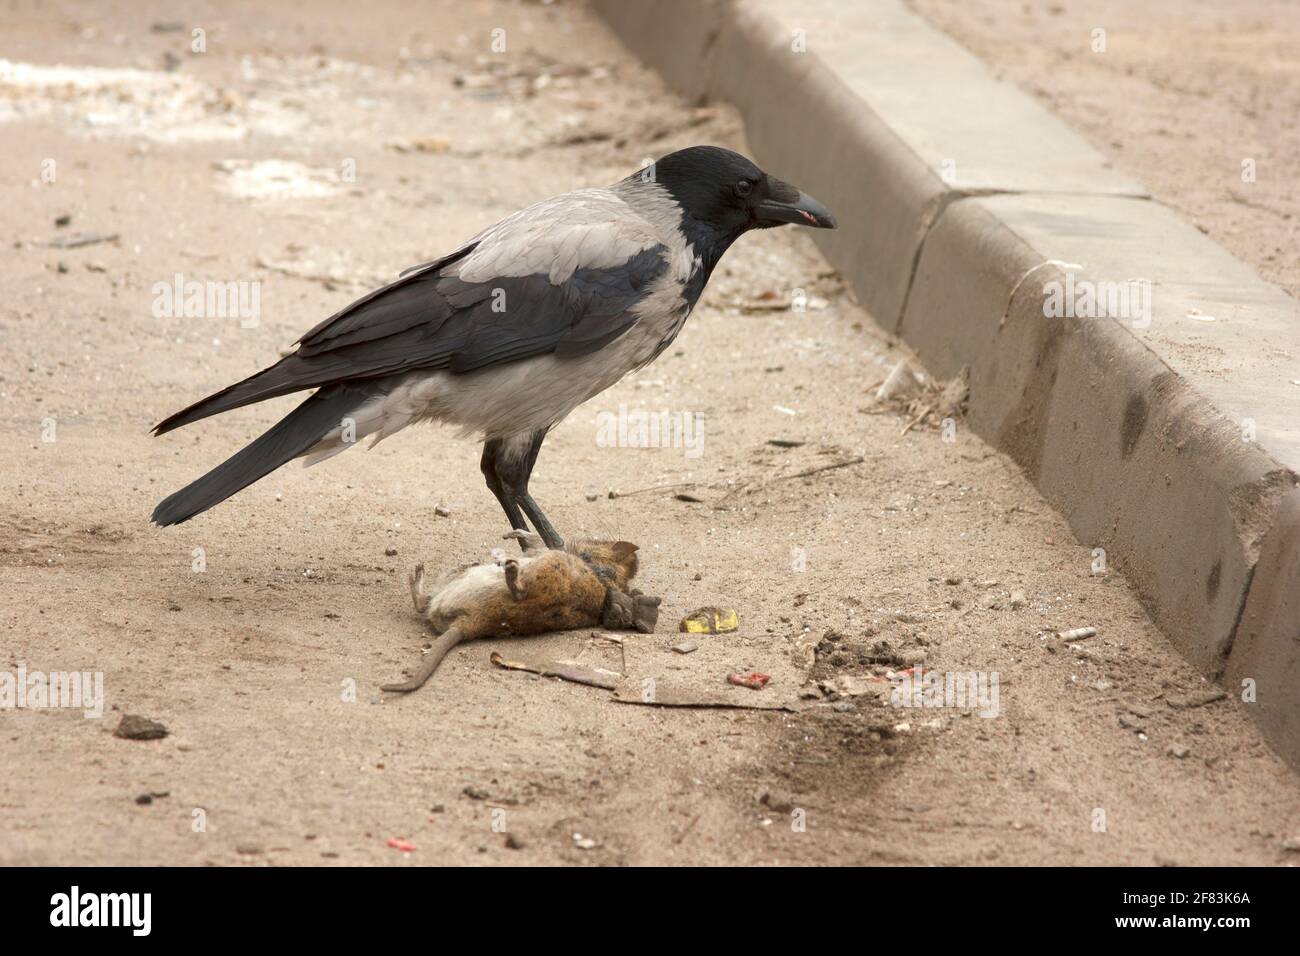 Il corvo grigio mangia il ratto grigio morto. Uccello e roditore. Corvus corone cornix e Rattus norvegicus. Scena urbana sul parcheggio. Catena alimentare Foto Stock